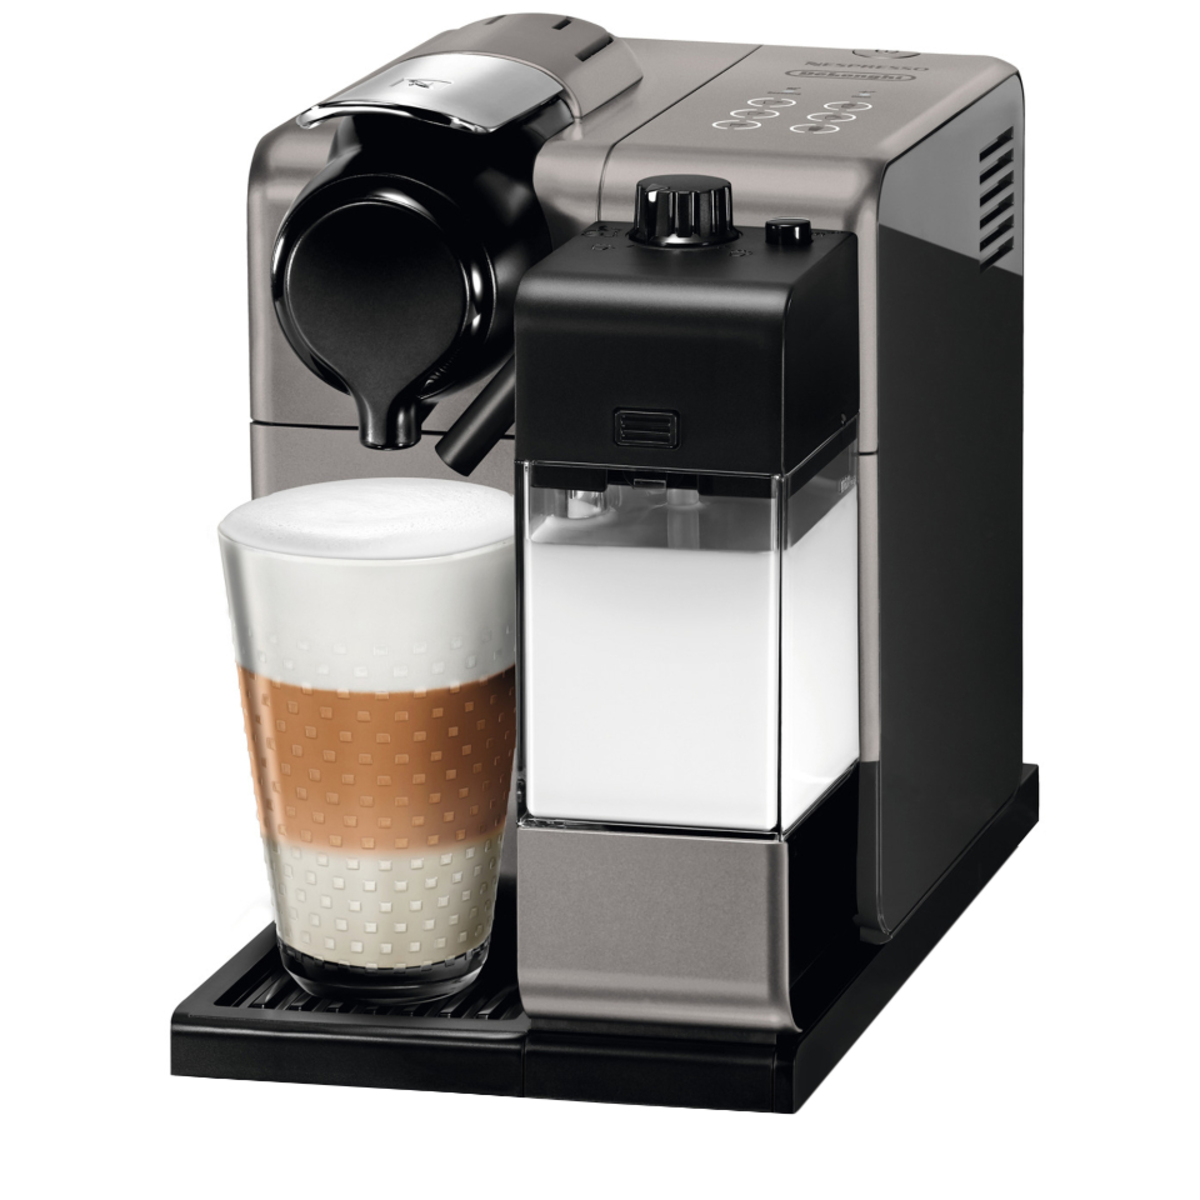 Nespresso kaffemaskine er bedst | Guide at vælge